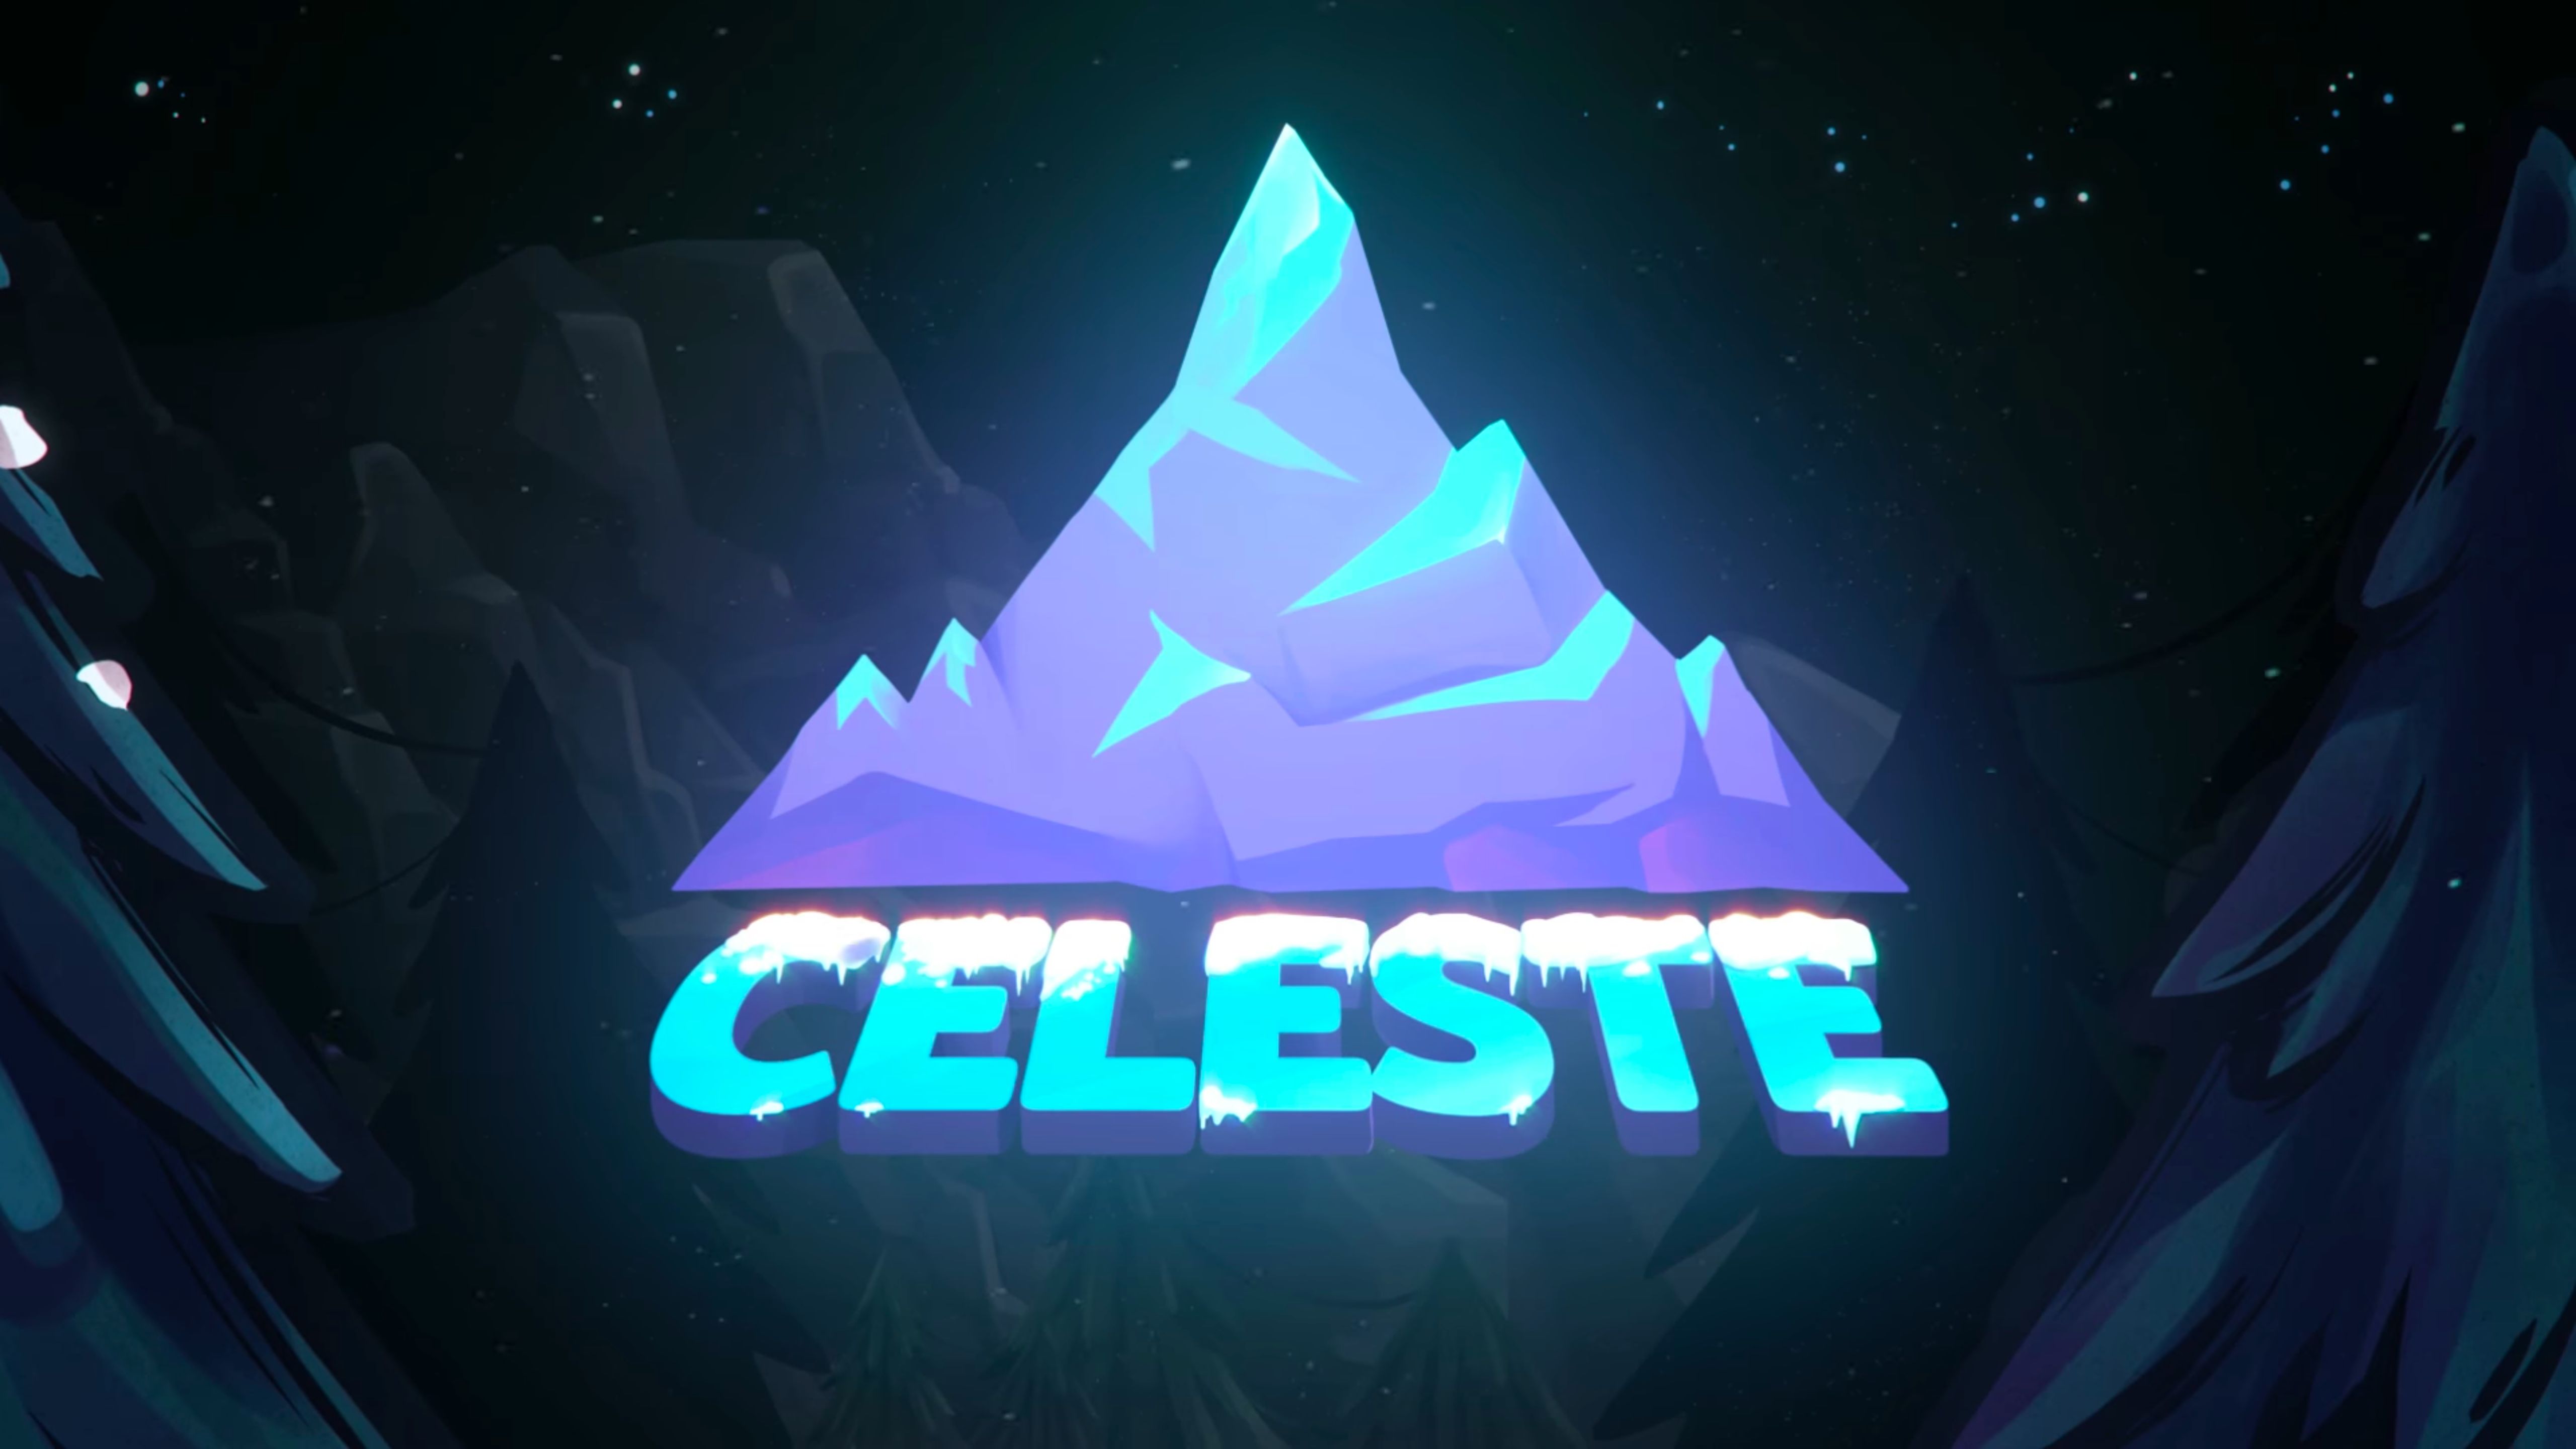 Descargar las imágenes de Celeste gratis para teléfonos Android y iPhone,  fondos de pantalla de Celeste para teléfonos móviles